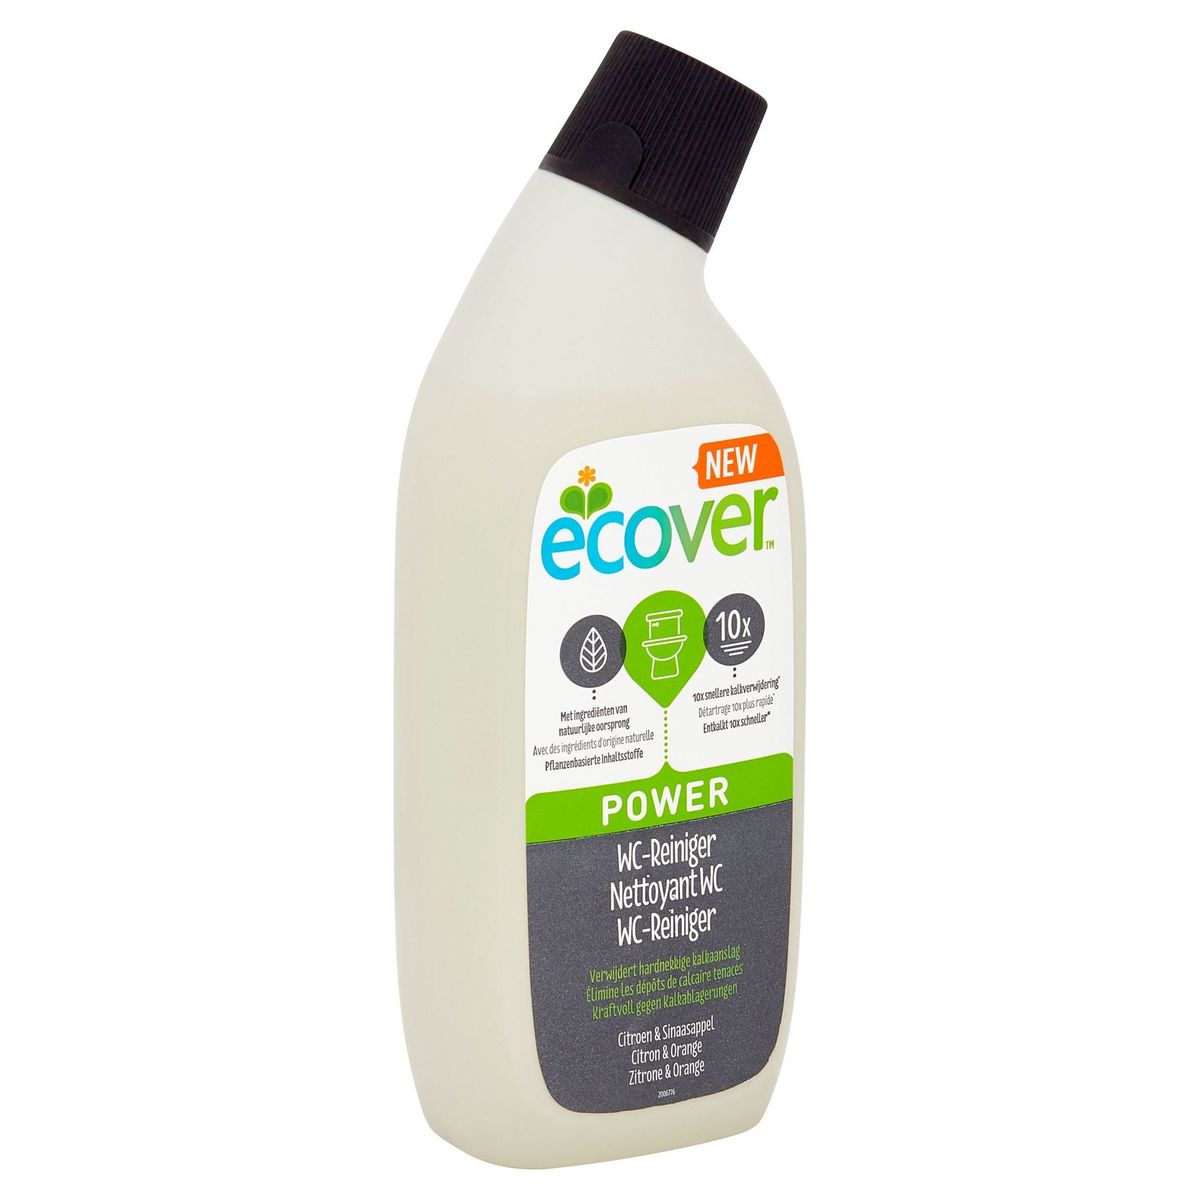 Ecover Power WC-Reiniger Citroen & Sinaasappel 750 ml